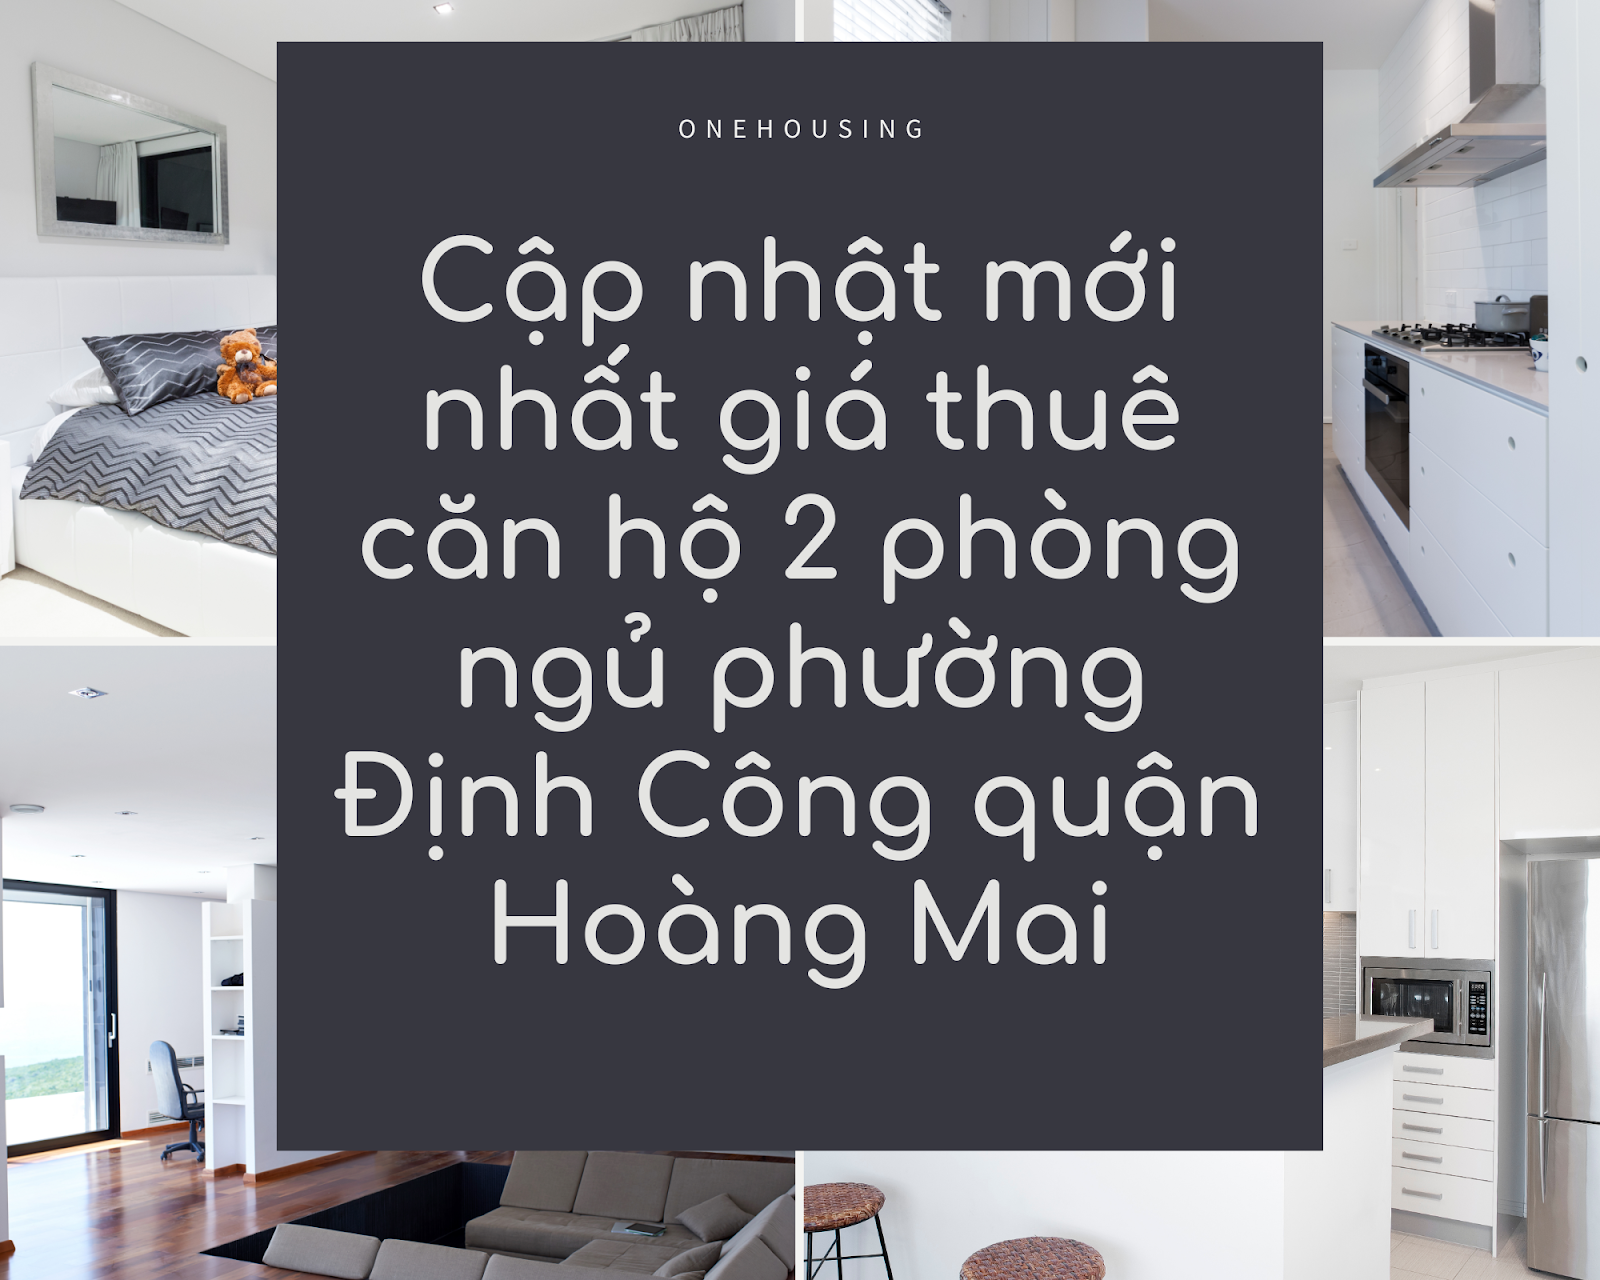 cap-nhat-moi-nhat-gia-thue-can-ho-2-phong-ngu-phuong-dinh-cong-quan-hoang-mai-onehousing-1